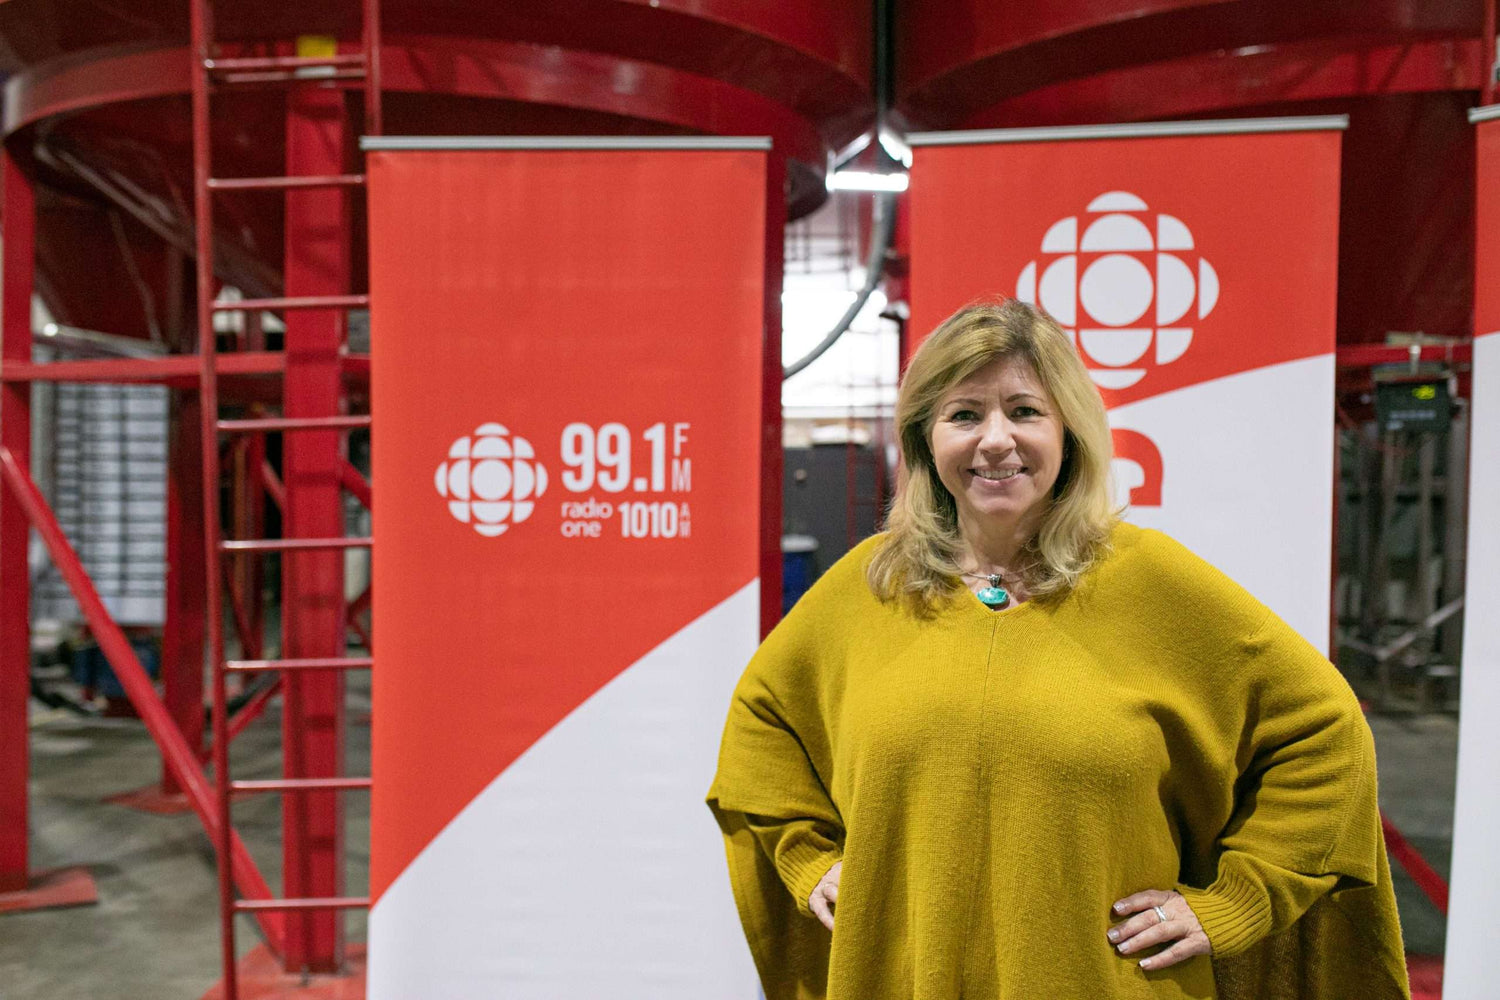 CBC Calgary and Angela Knight